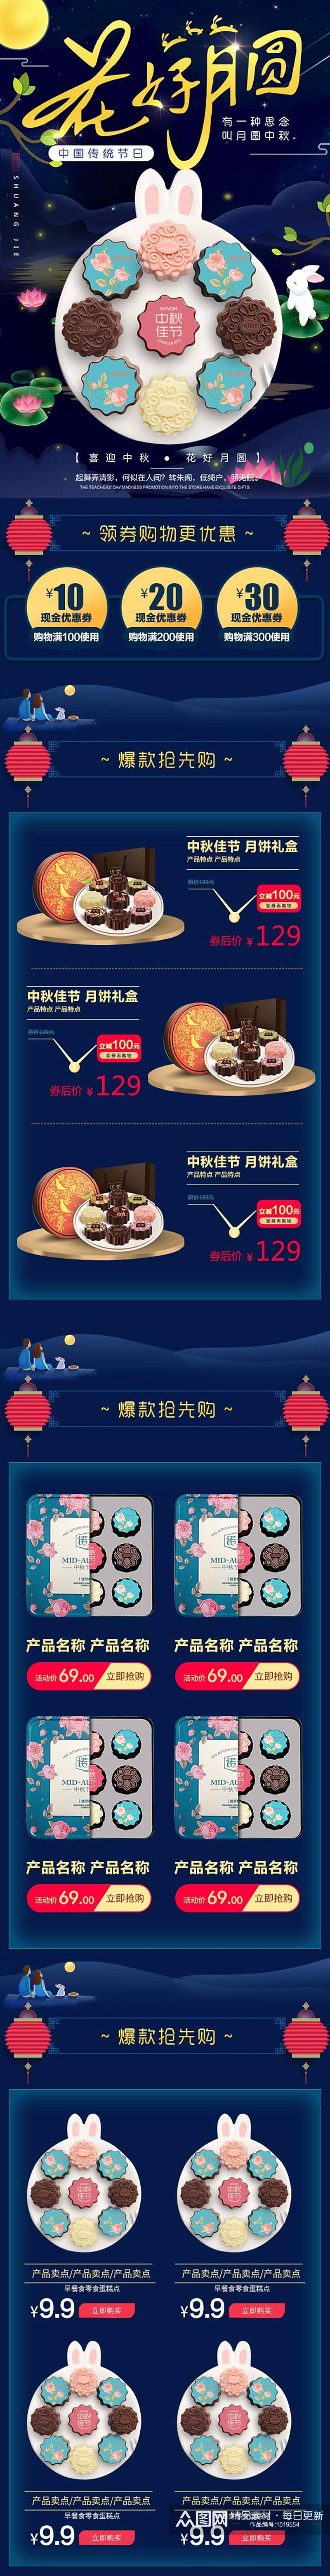 花好月圆中国传统节日中秋节月饼详情页设计素材